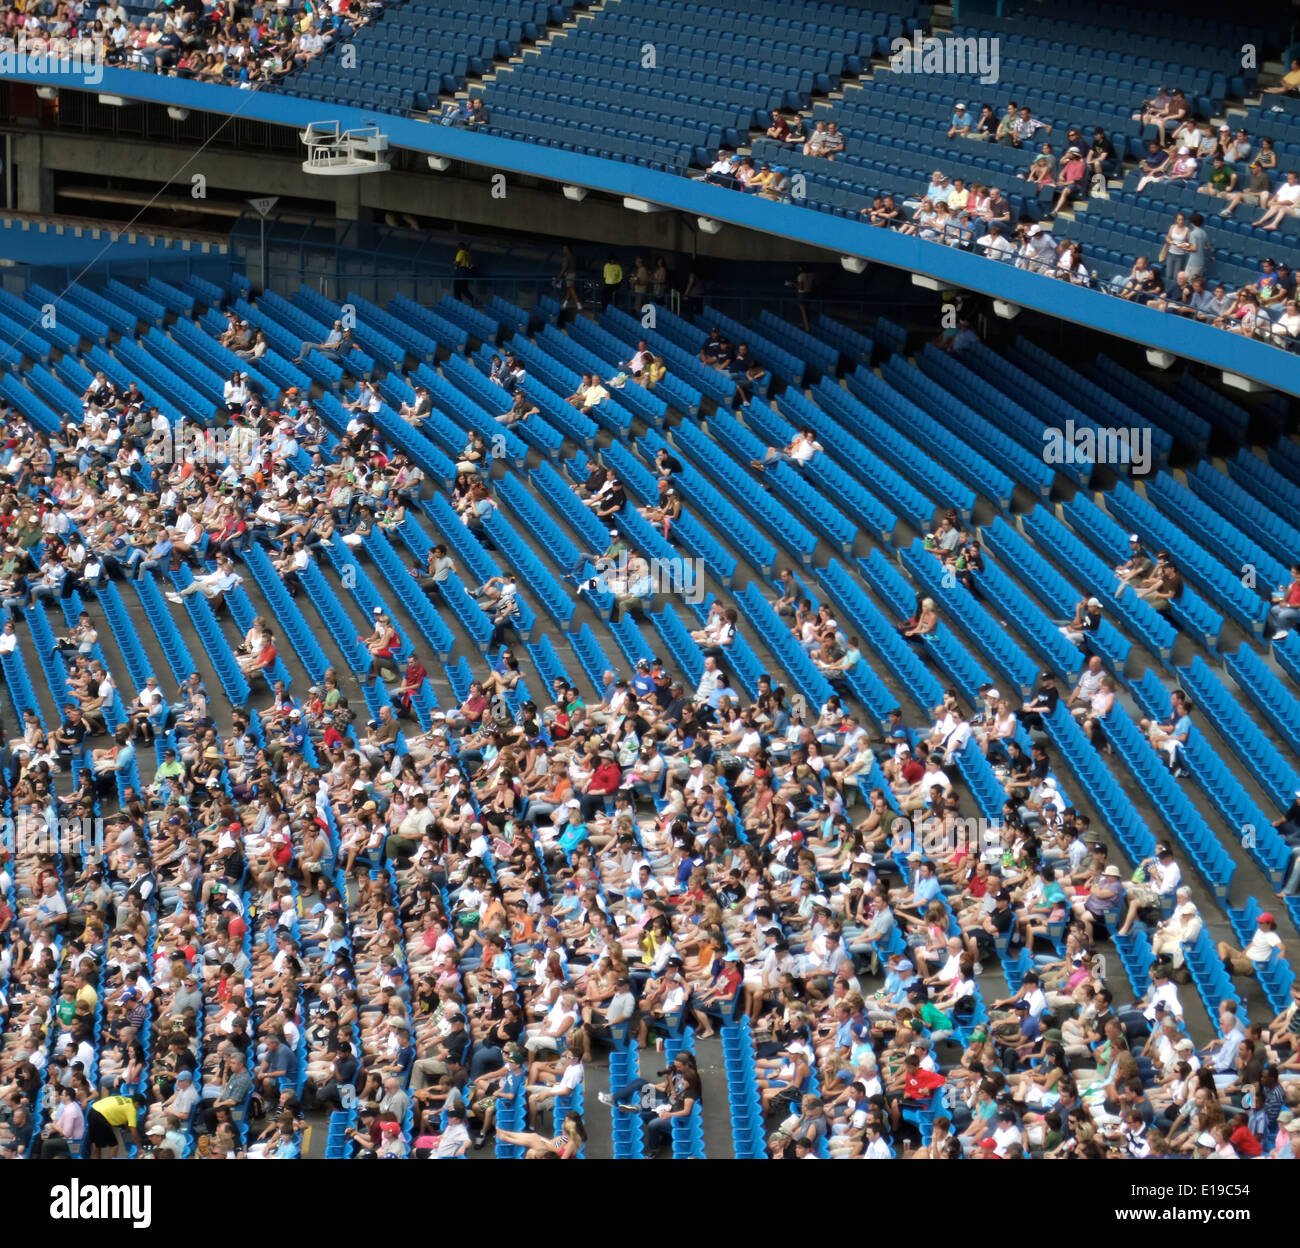 Vue aérienne de spectateurs regardant match dans un stade Banque D'Images